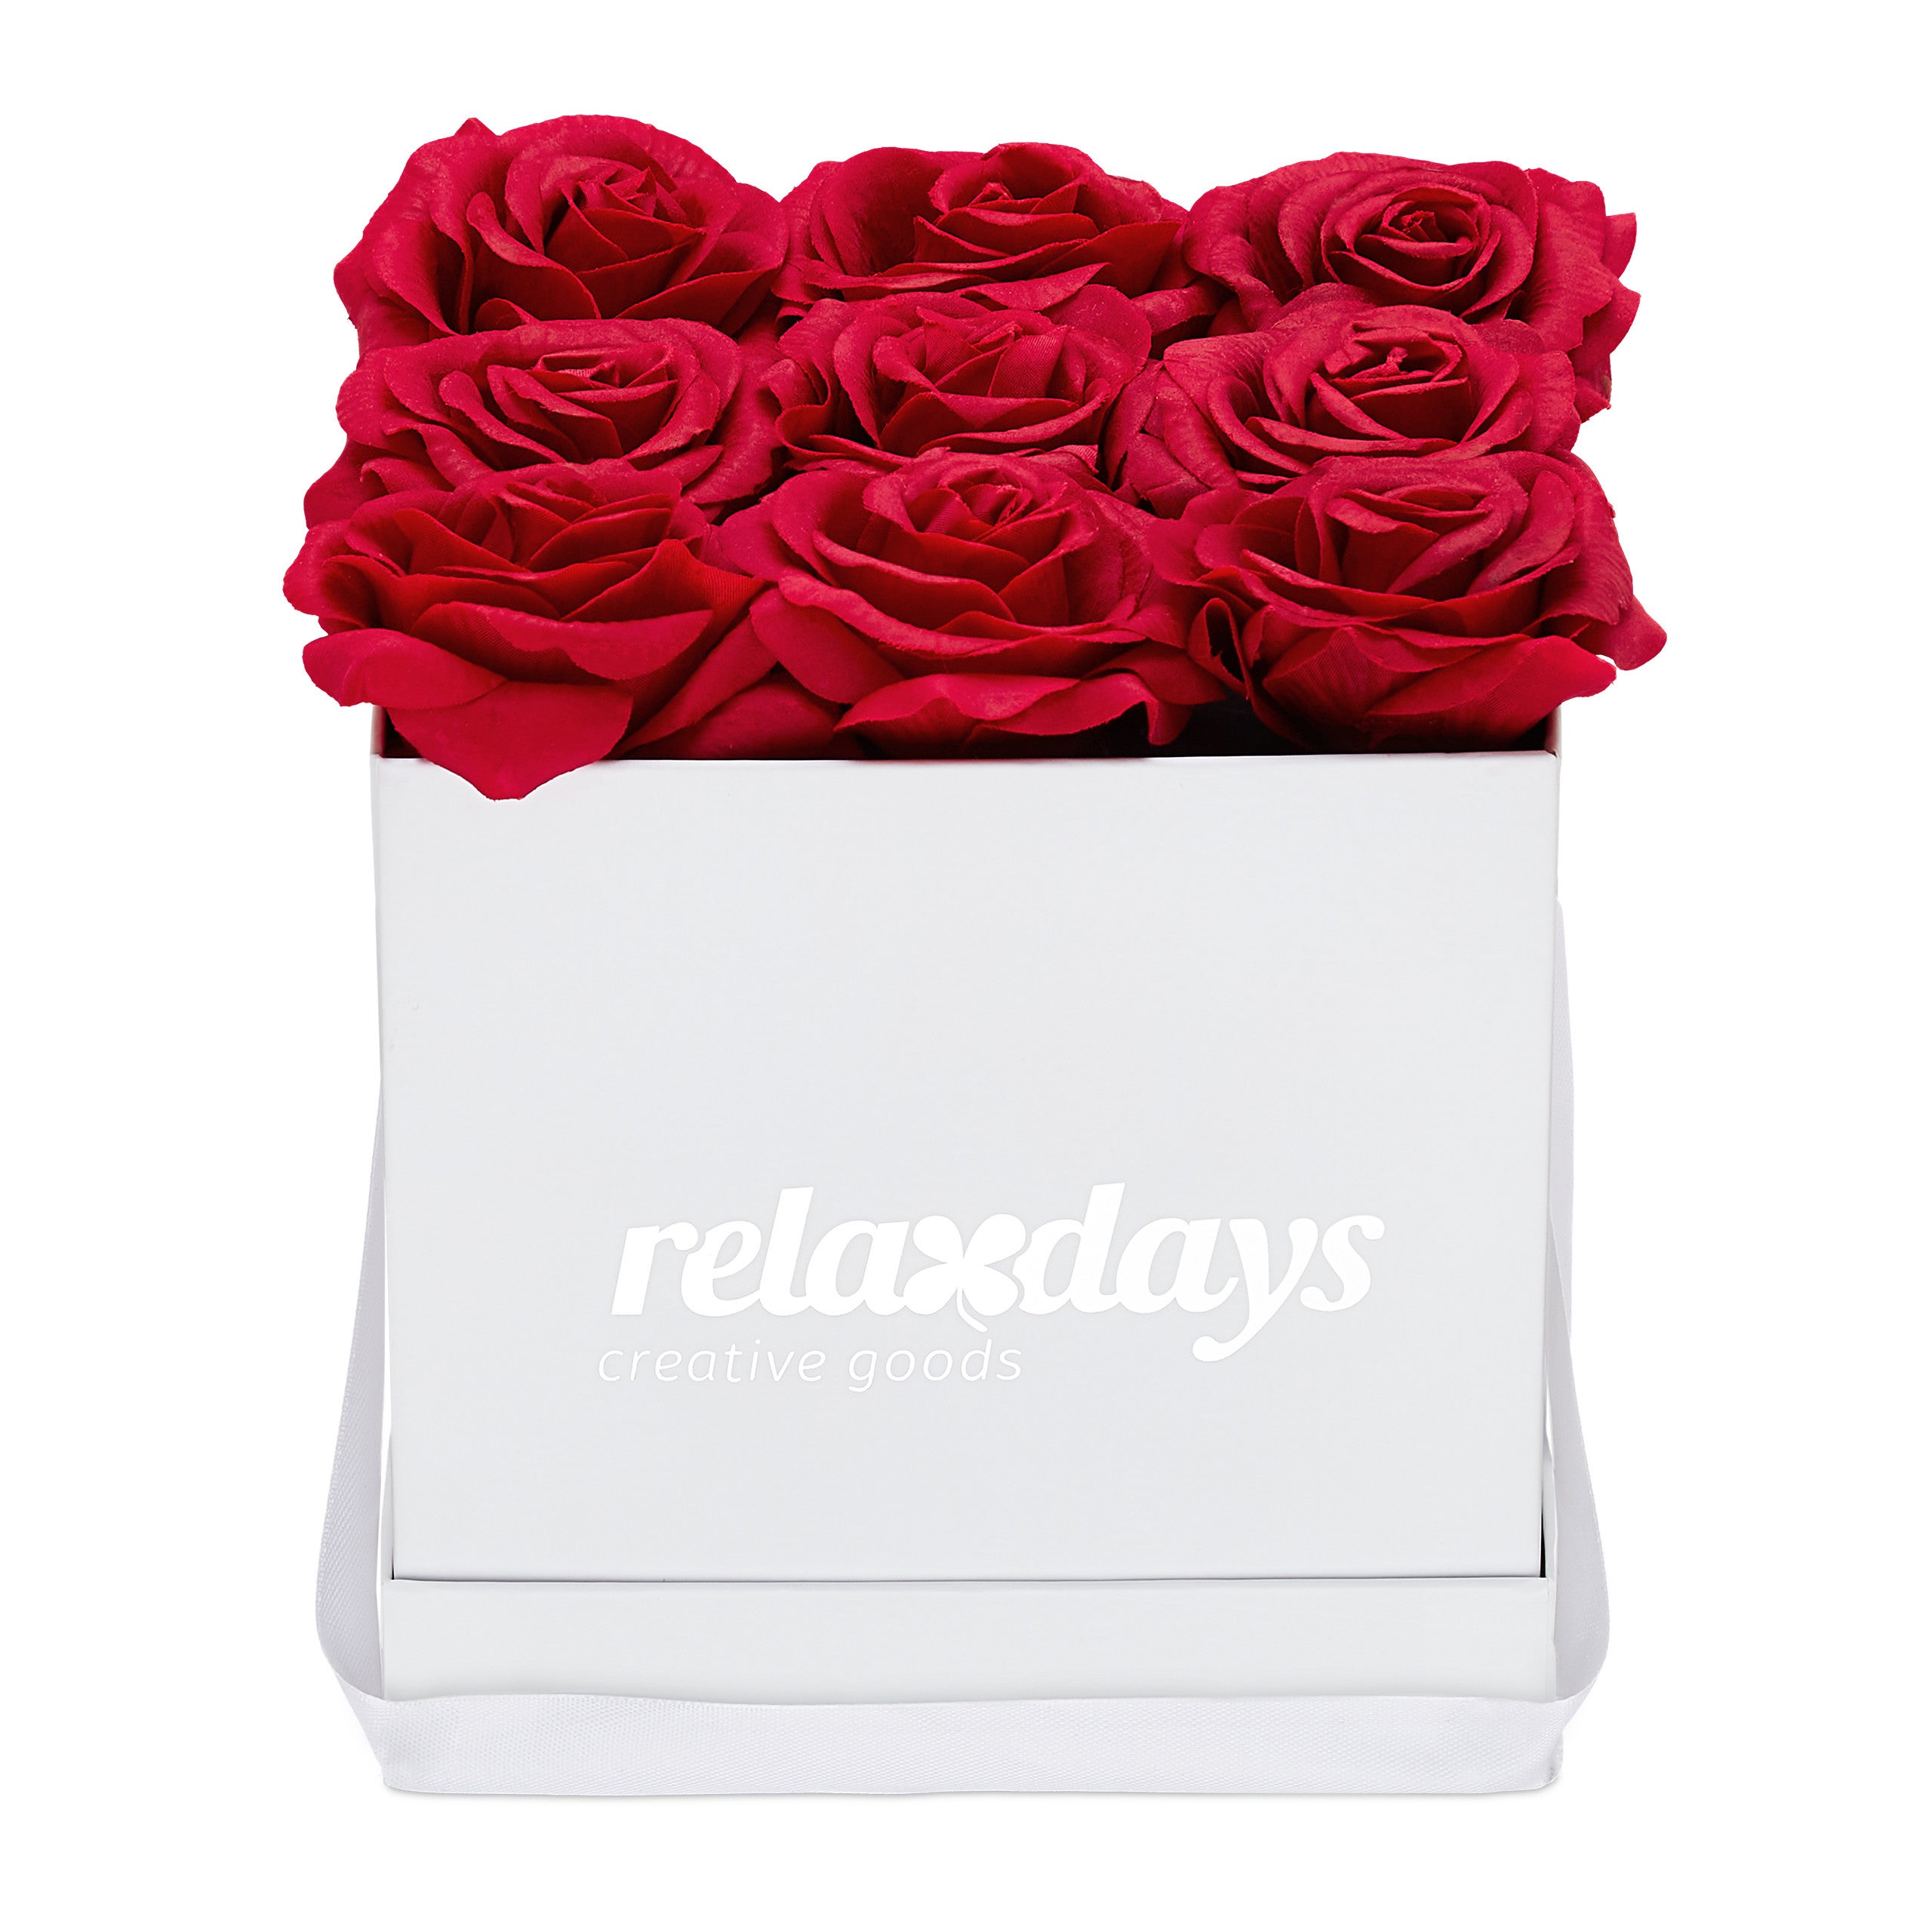 Relaxdays Boîte à roses carré, 9 pièces, Bac floral noir, fleurs durables,  Idée cadeau, réaliste, rouge